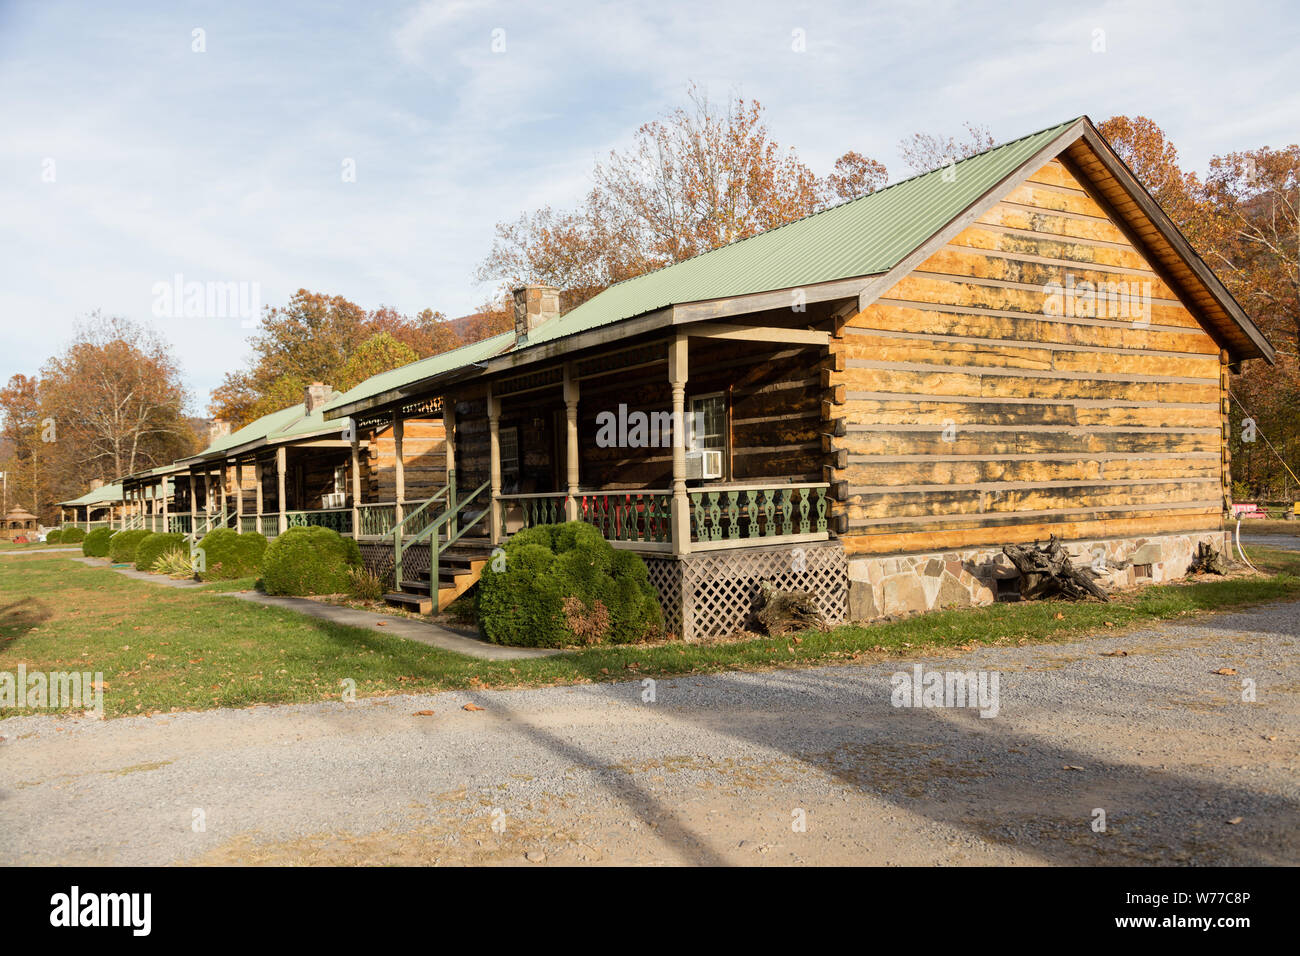 Eine Reihe von touristischen Kabinen in Seneca Rocks, West Virginia, physische Beschreibung: 1 Foto: digital, tiff-Datei, Farbe. Hinweise: Kaufen; Carol M. Highsmith Fotografie, Inc.; 2015; (DLC/PP 2015: 055).; Stockfoto